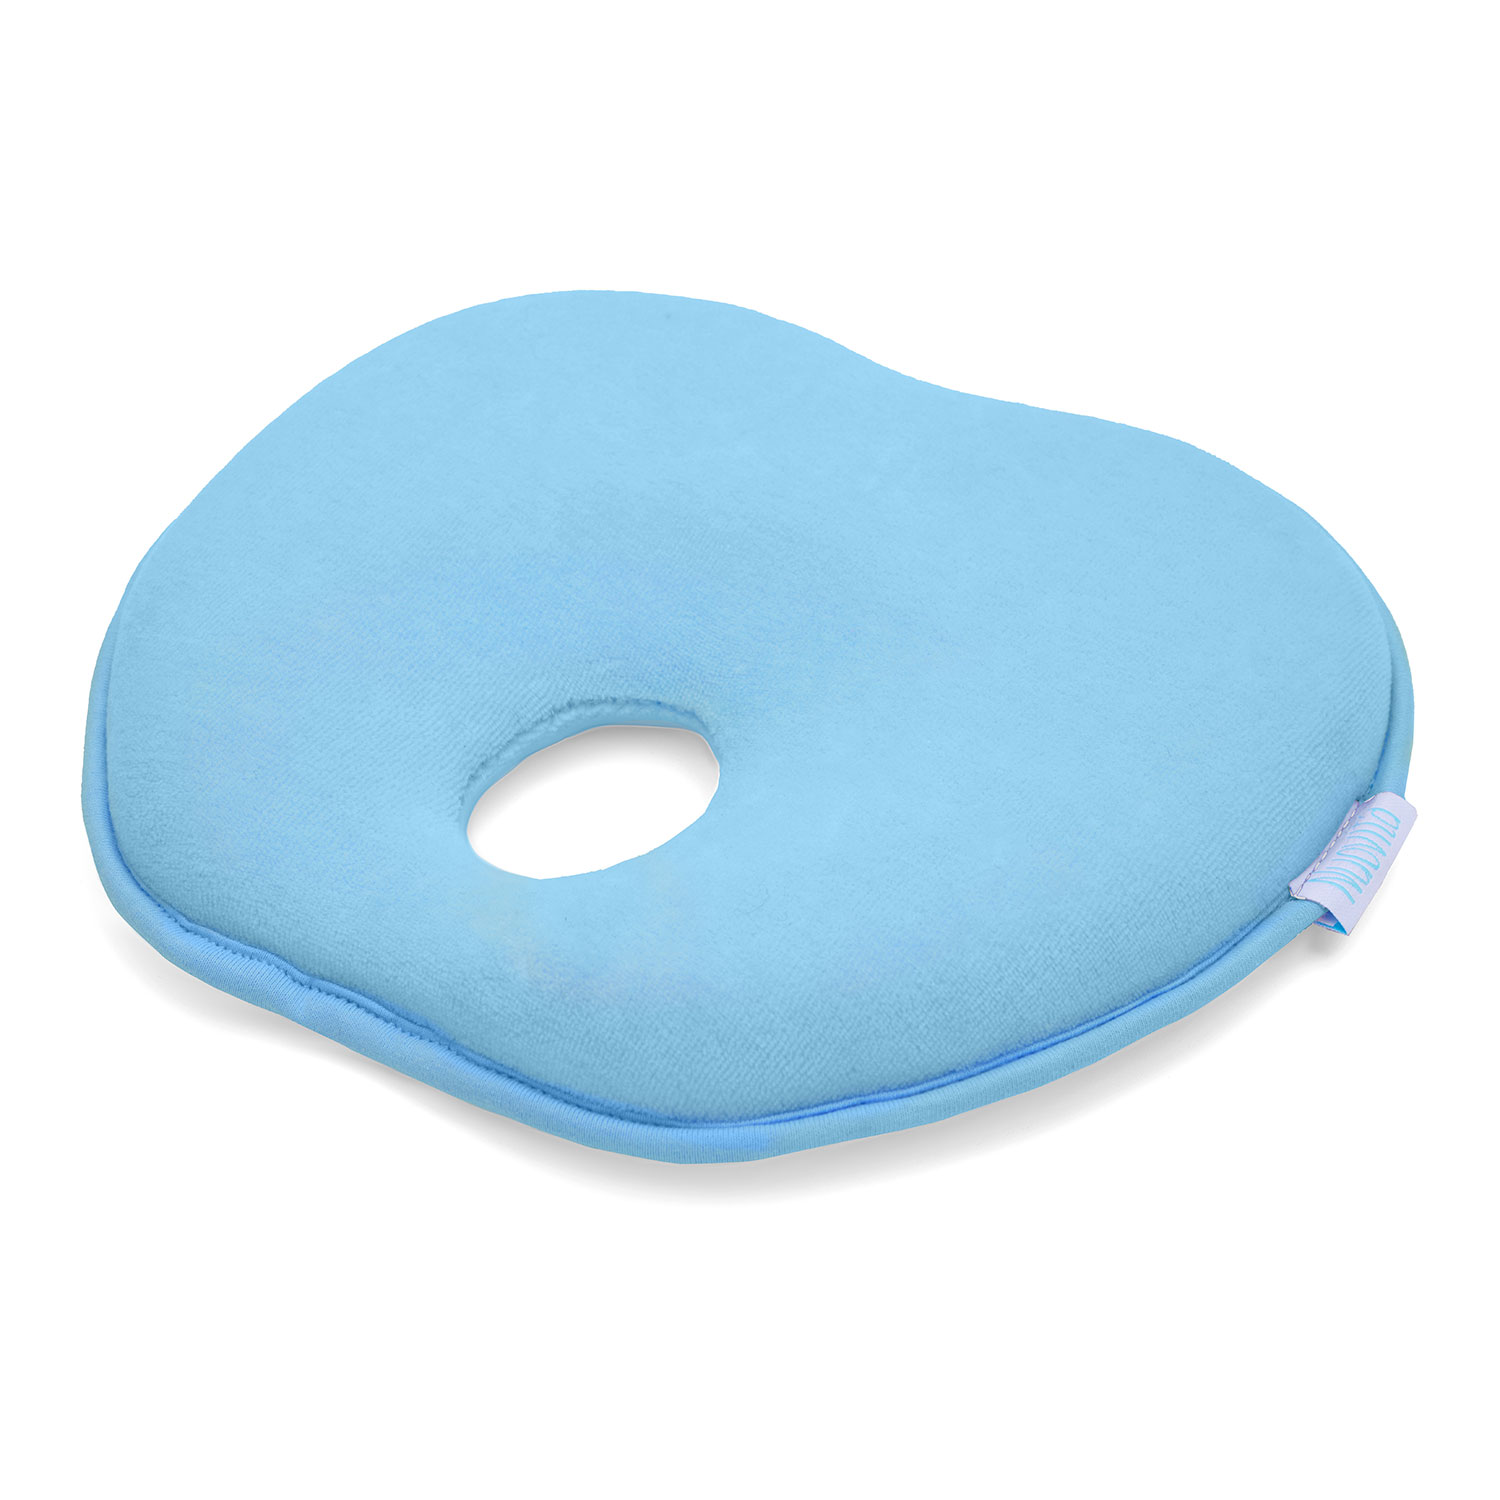 Подушка для новорожденного Nuovita NEONUTTI Mela Memoria Blu/Голубой подушка для новорожденного nuovita neonutti mela memoria bianco белый